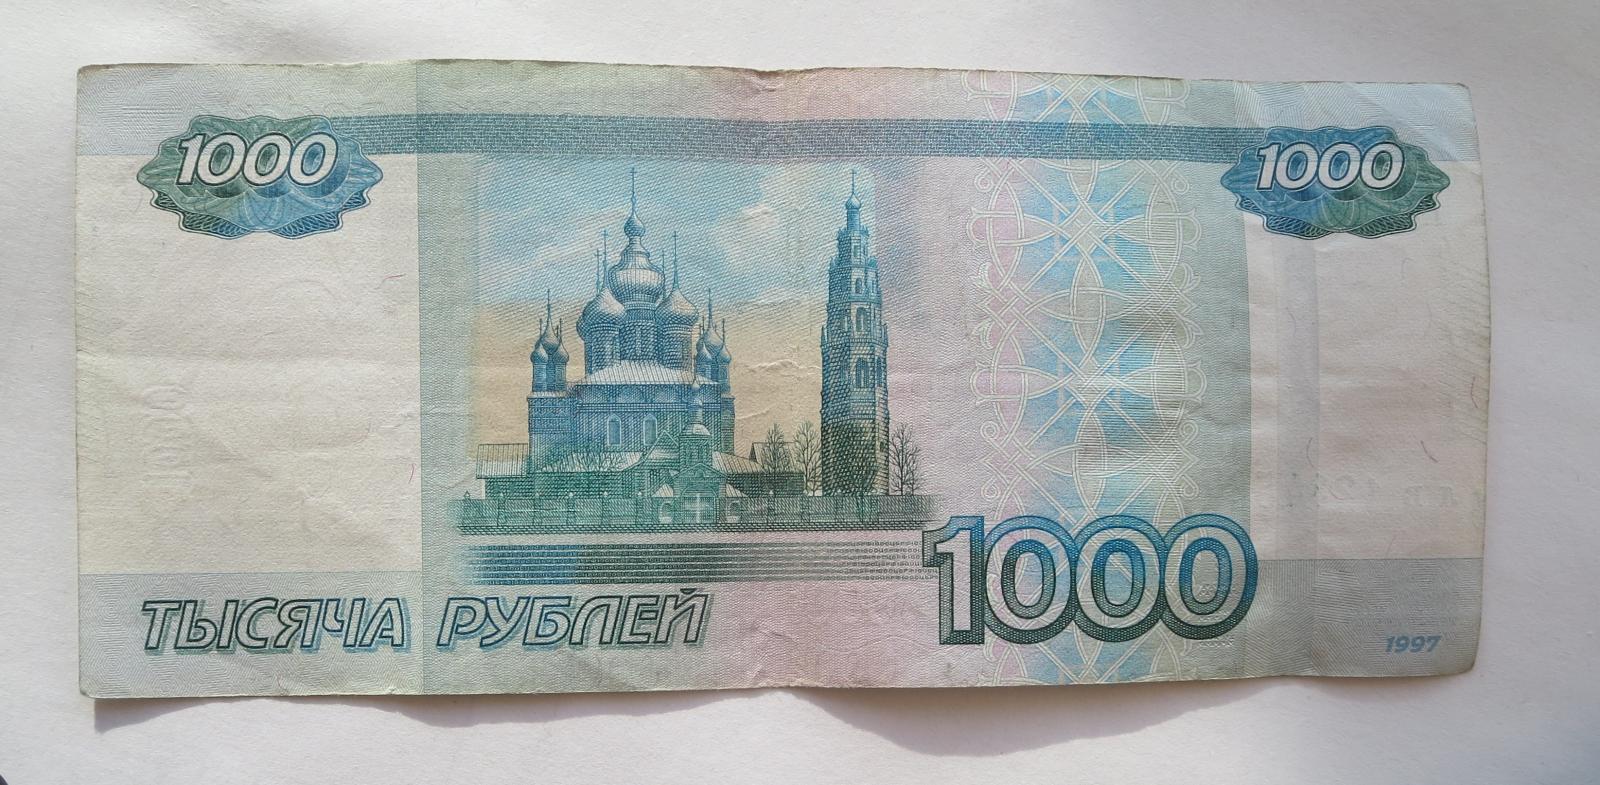 Го 1000 рублей. 1000 Рублей. Банкнота 1000 рублей. Тысяча рублей купюра. 1000 Тысяч рублей.